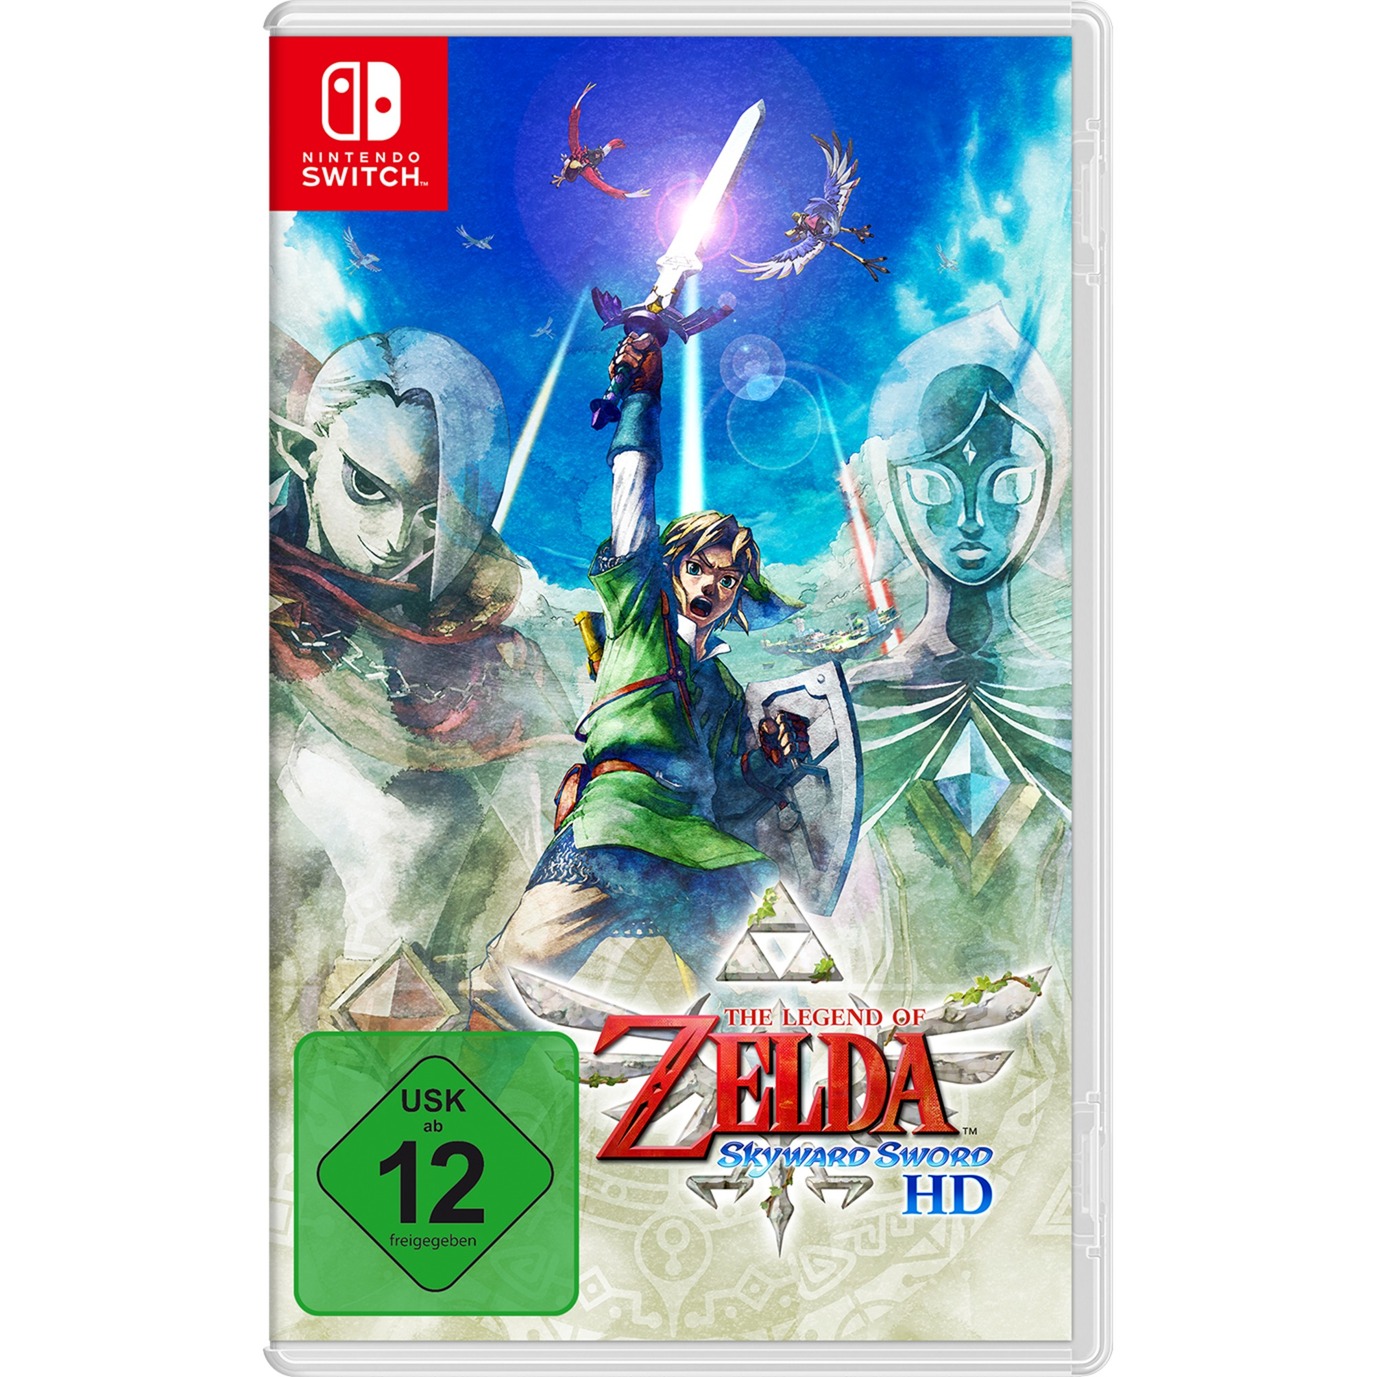 Image of Alternate - The Legend of Zelda: Skyward Sword HD, Nintendo Switch-Spiel online einkaufen bei Alternate